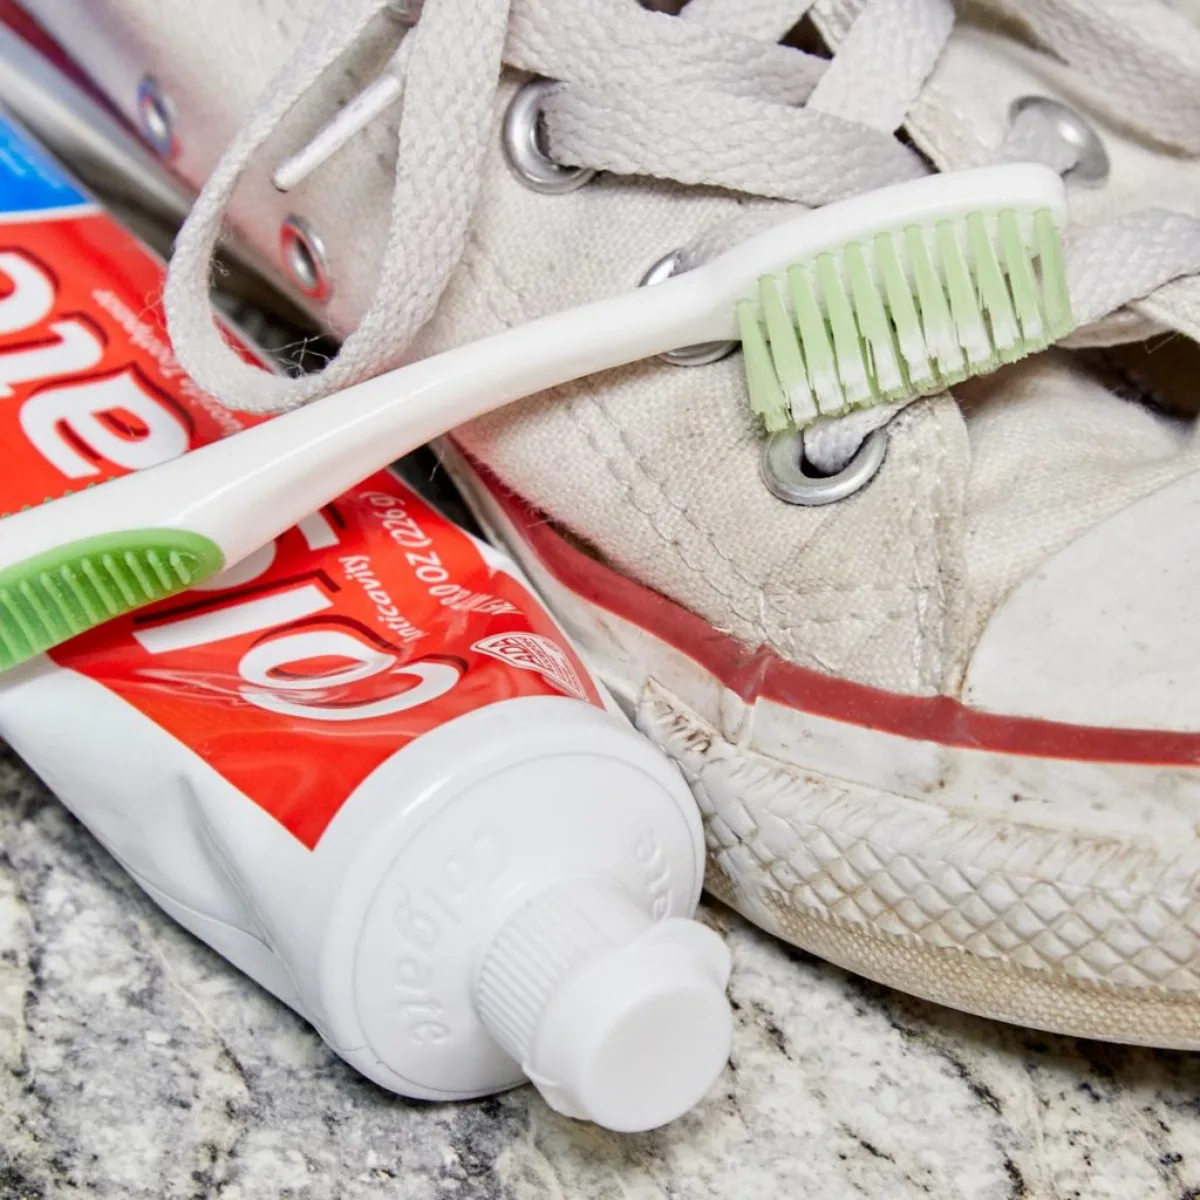 peut on nettoyer les converses blanches avec du dentifrice